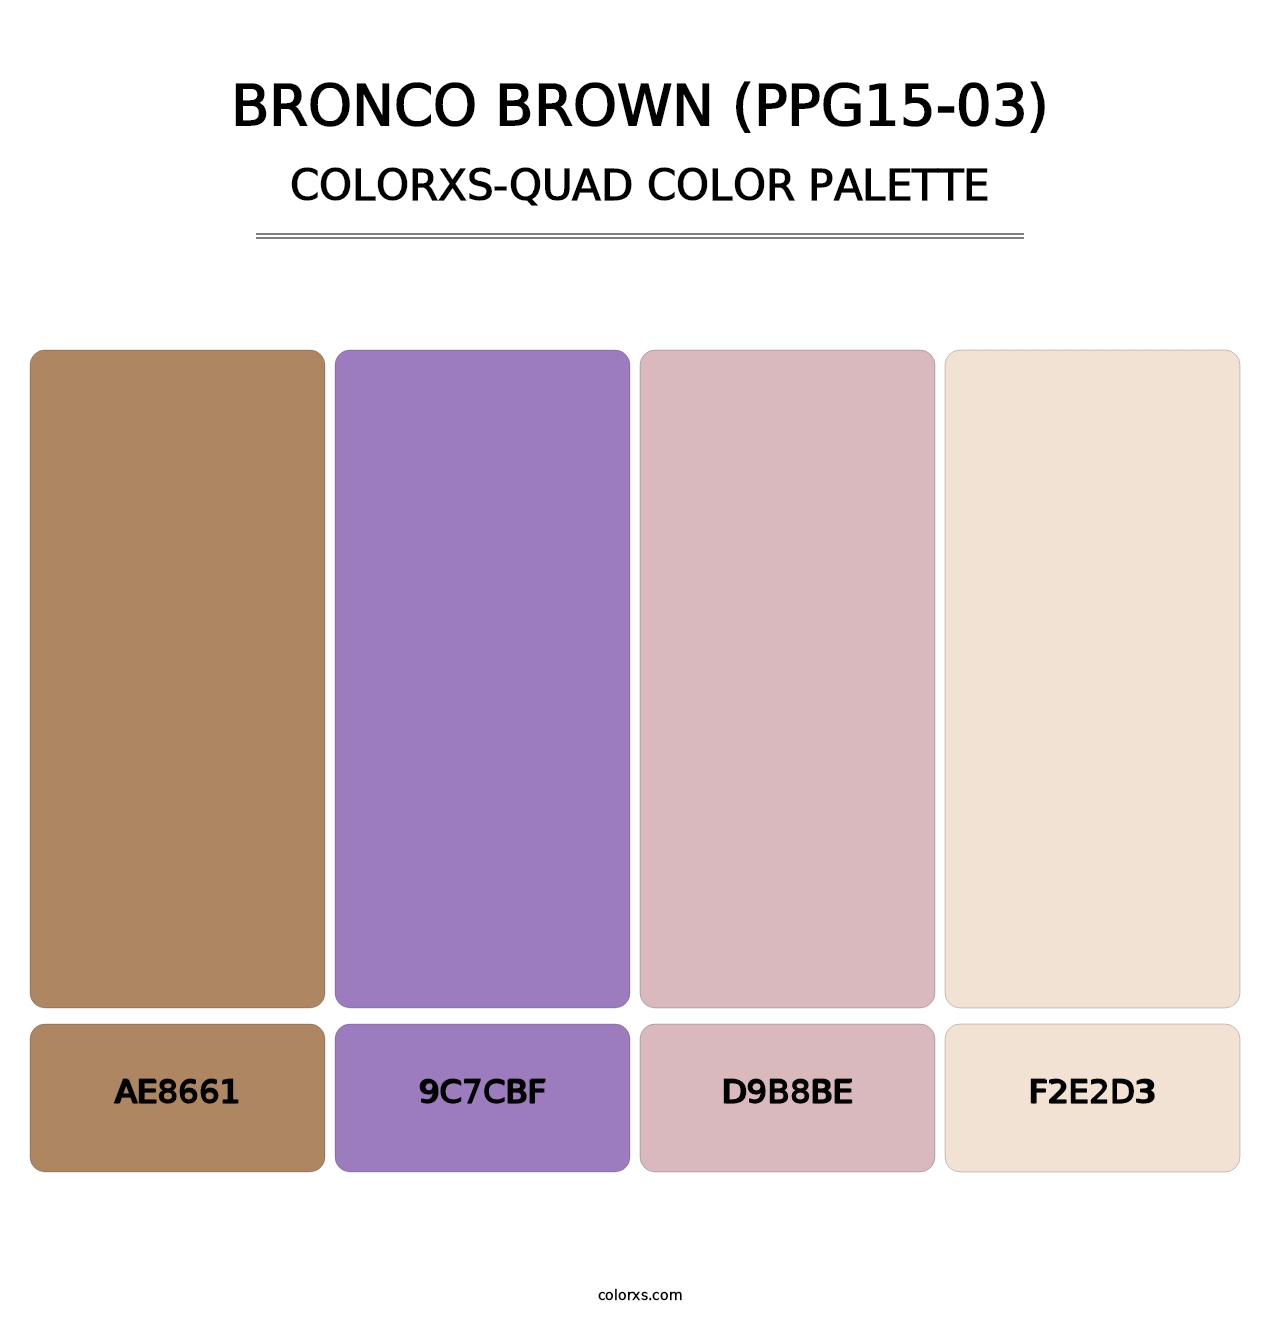 Bronco Brown (PPG15-03) - Colorxs Quad Palette